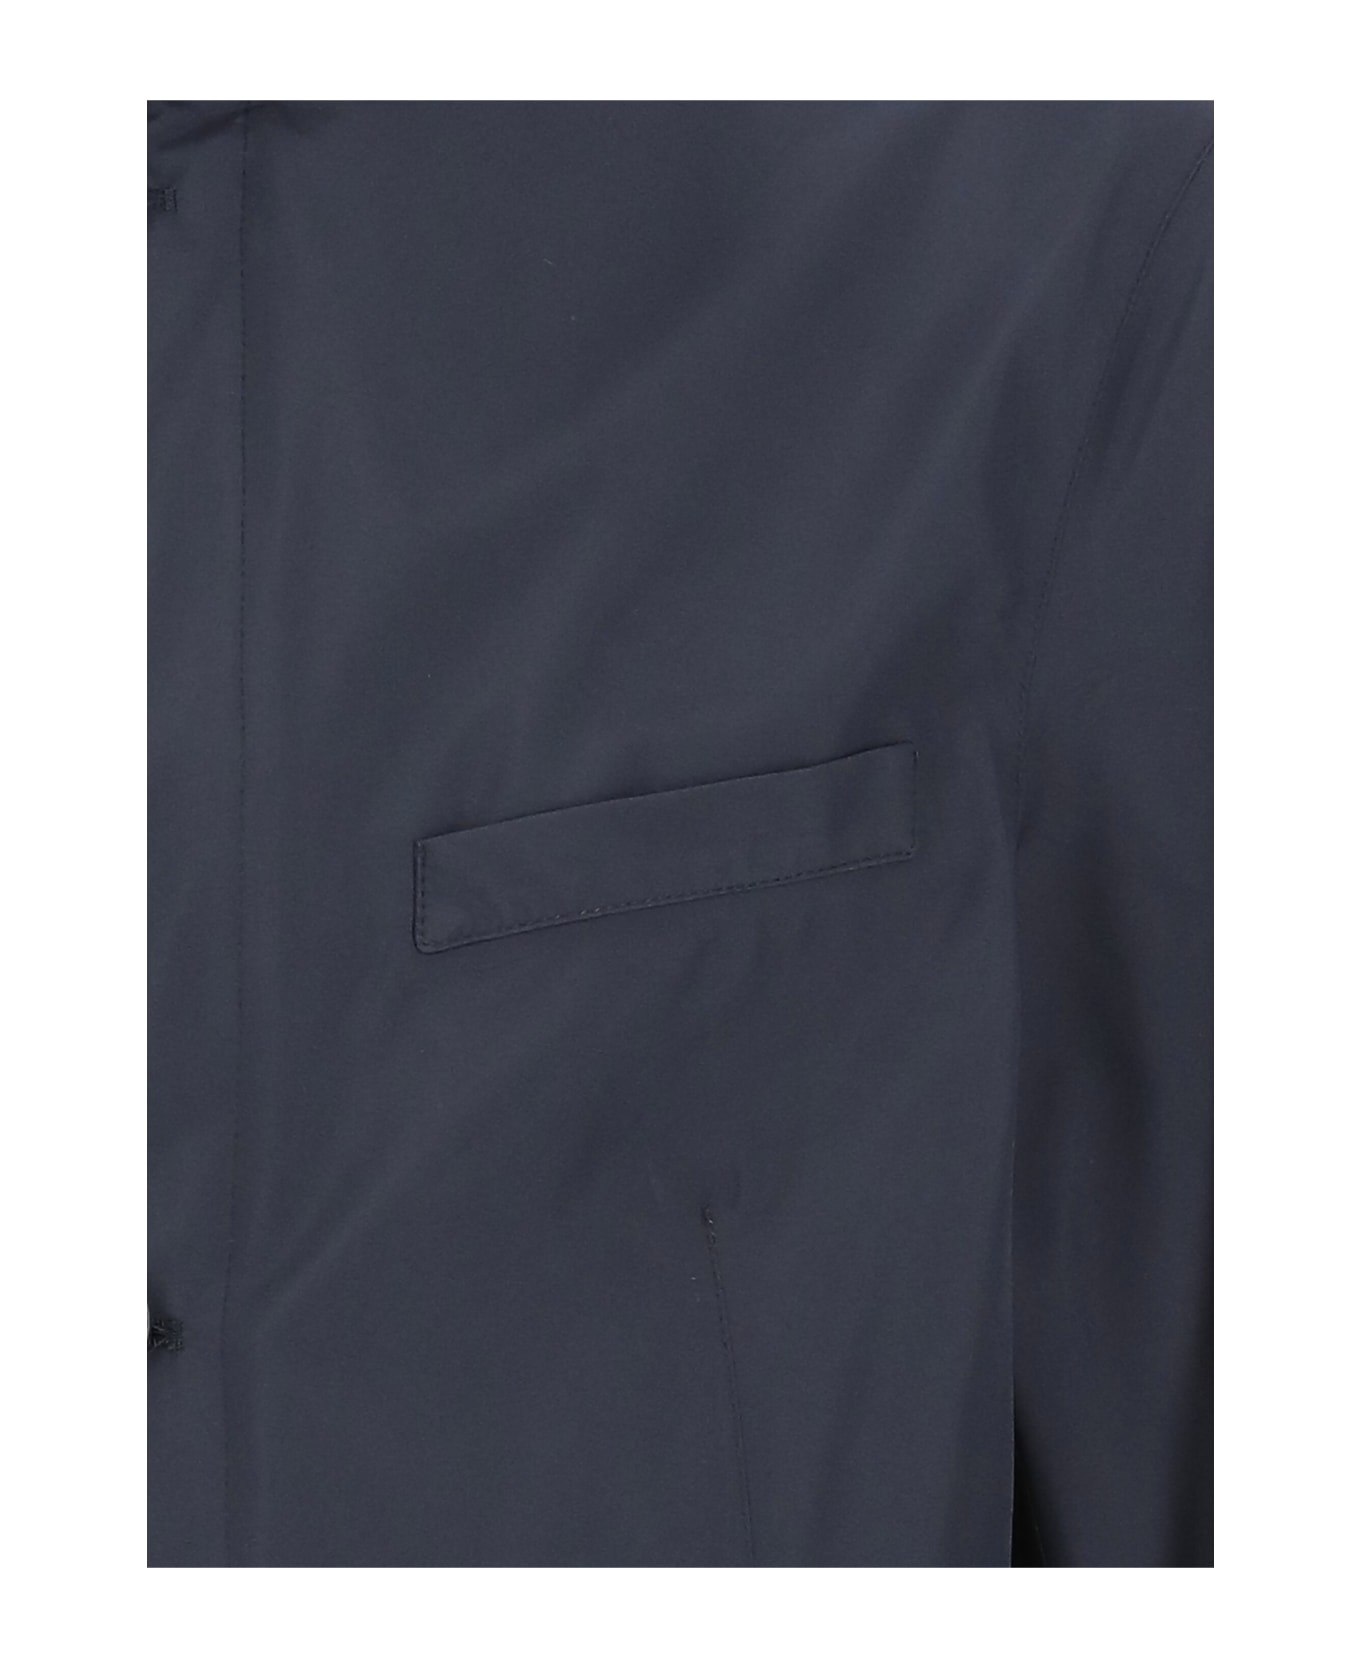 Herno Waterproof Fabric Jacket - Blue